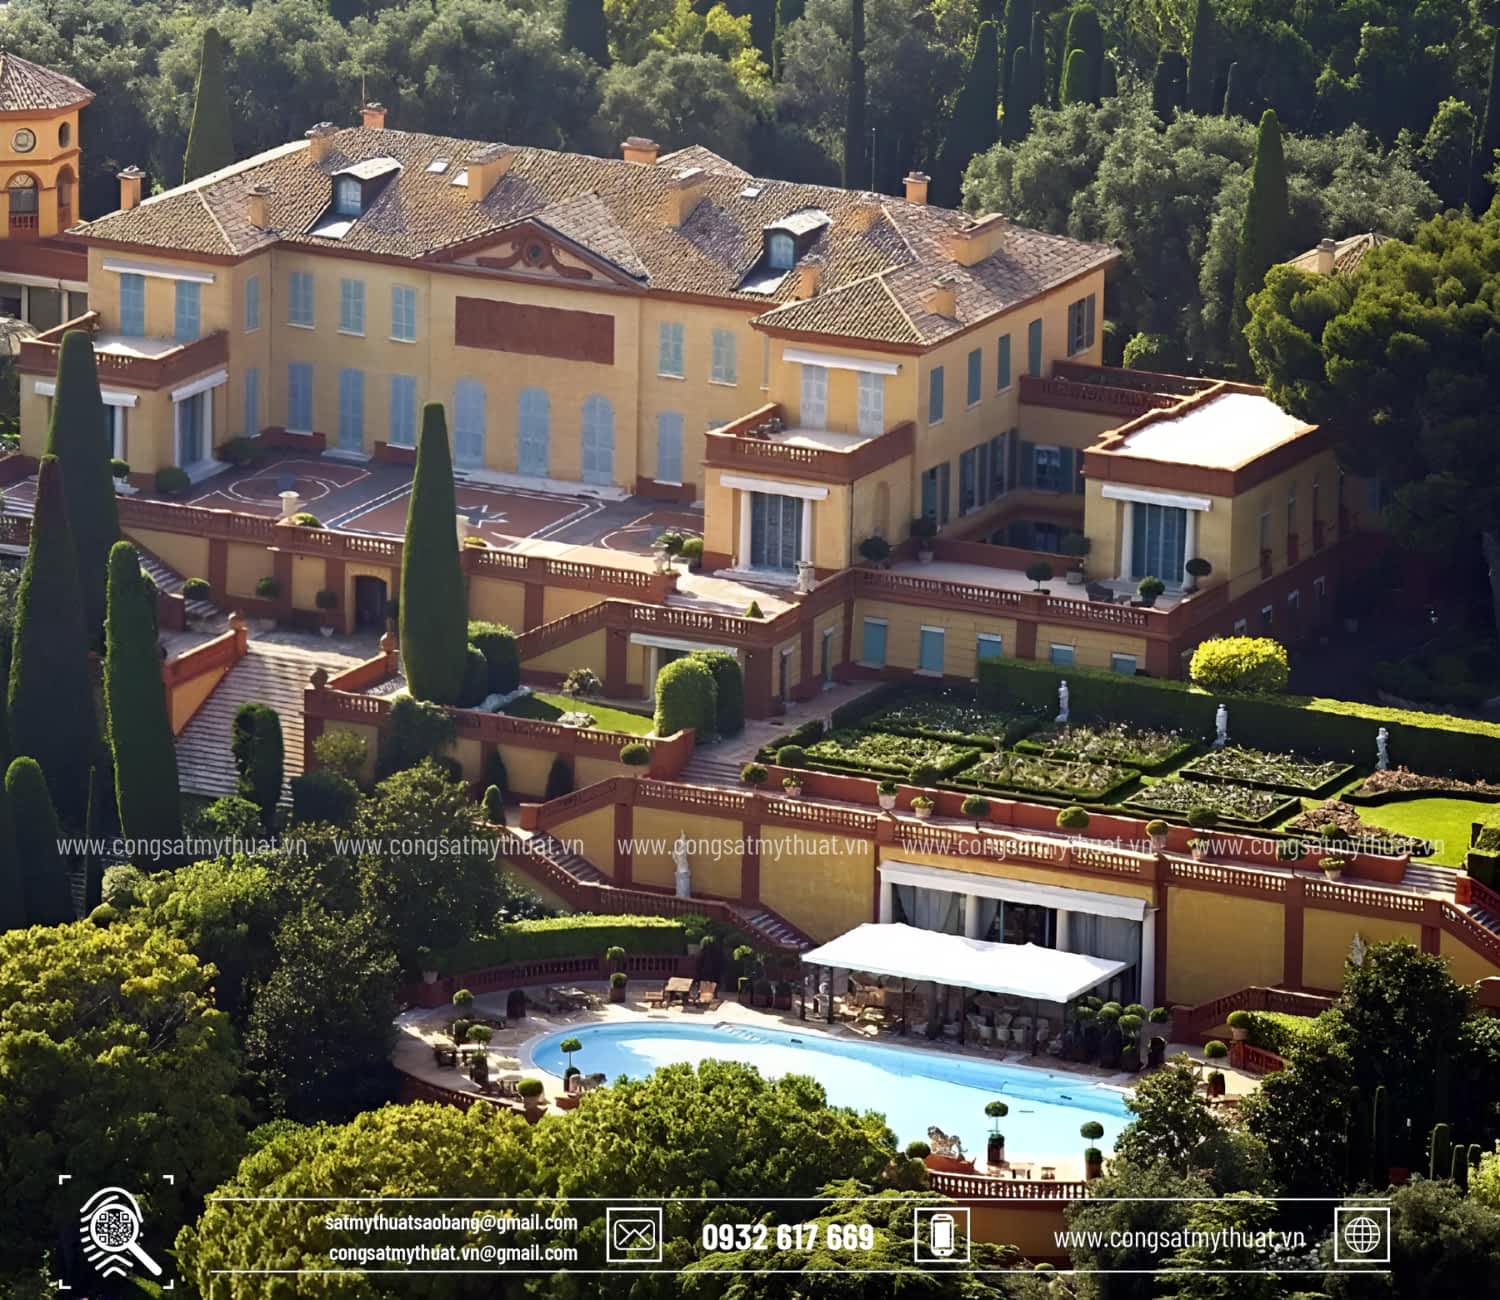 Villa Leopolda - 1 trong những biệt thự đẹp nhất thế giới tại Pháp